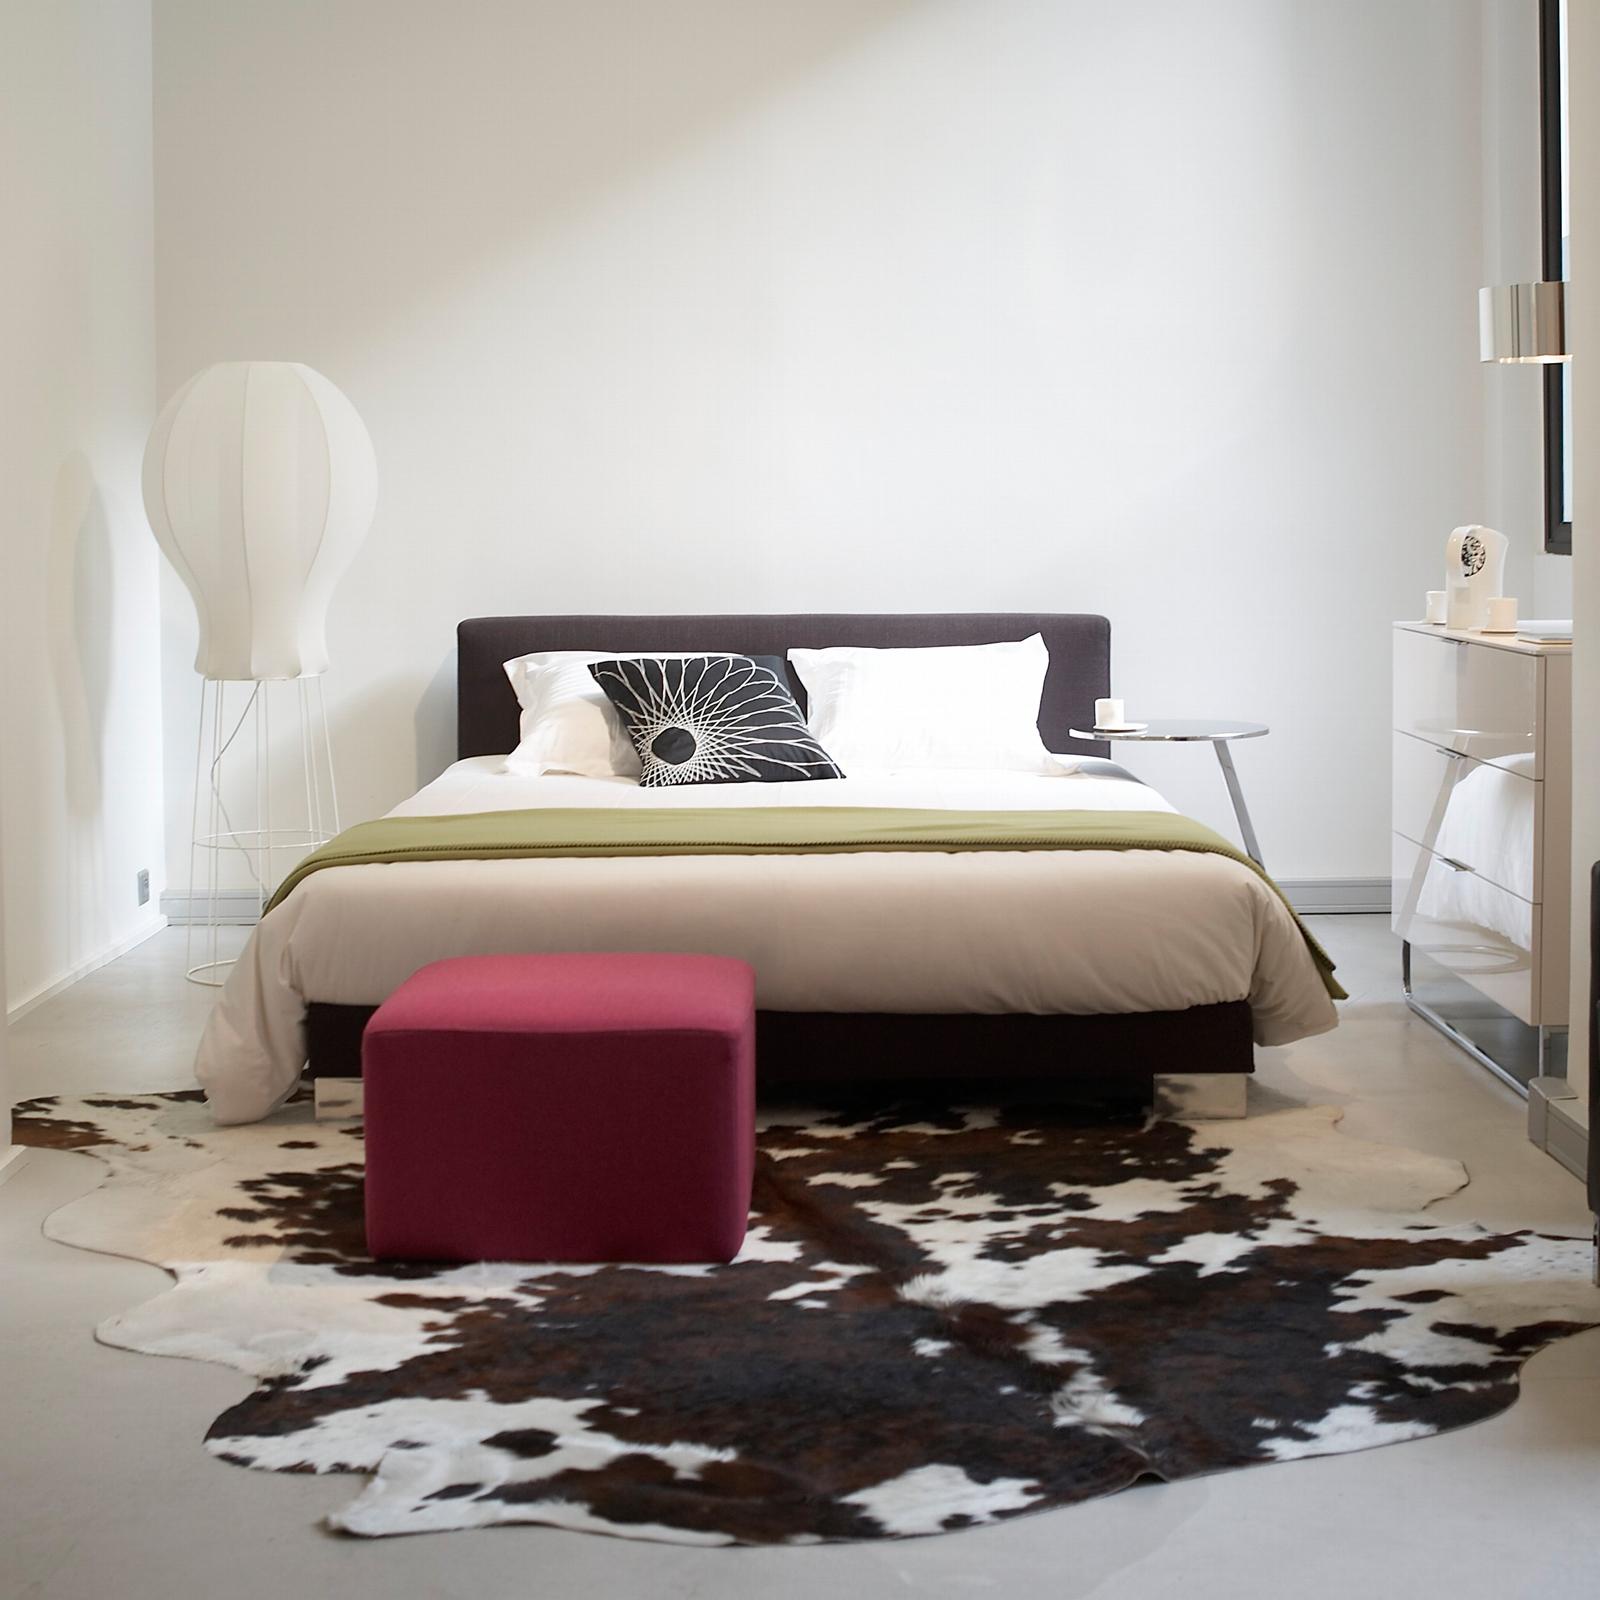 Kuhfellteppich im Schlafzimmer #hocker #stehlampe #kuhfell #spiegelschrank ©Ligne Roset